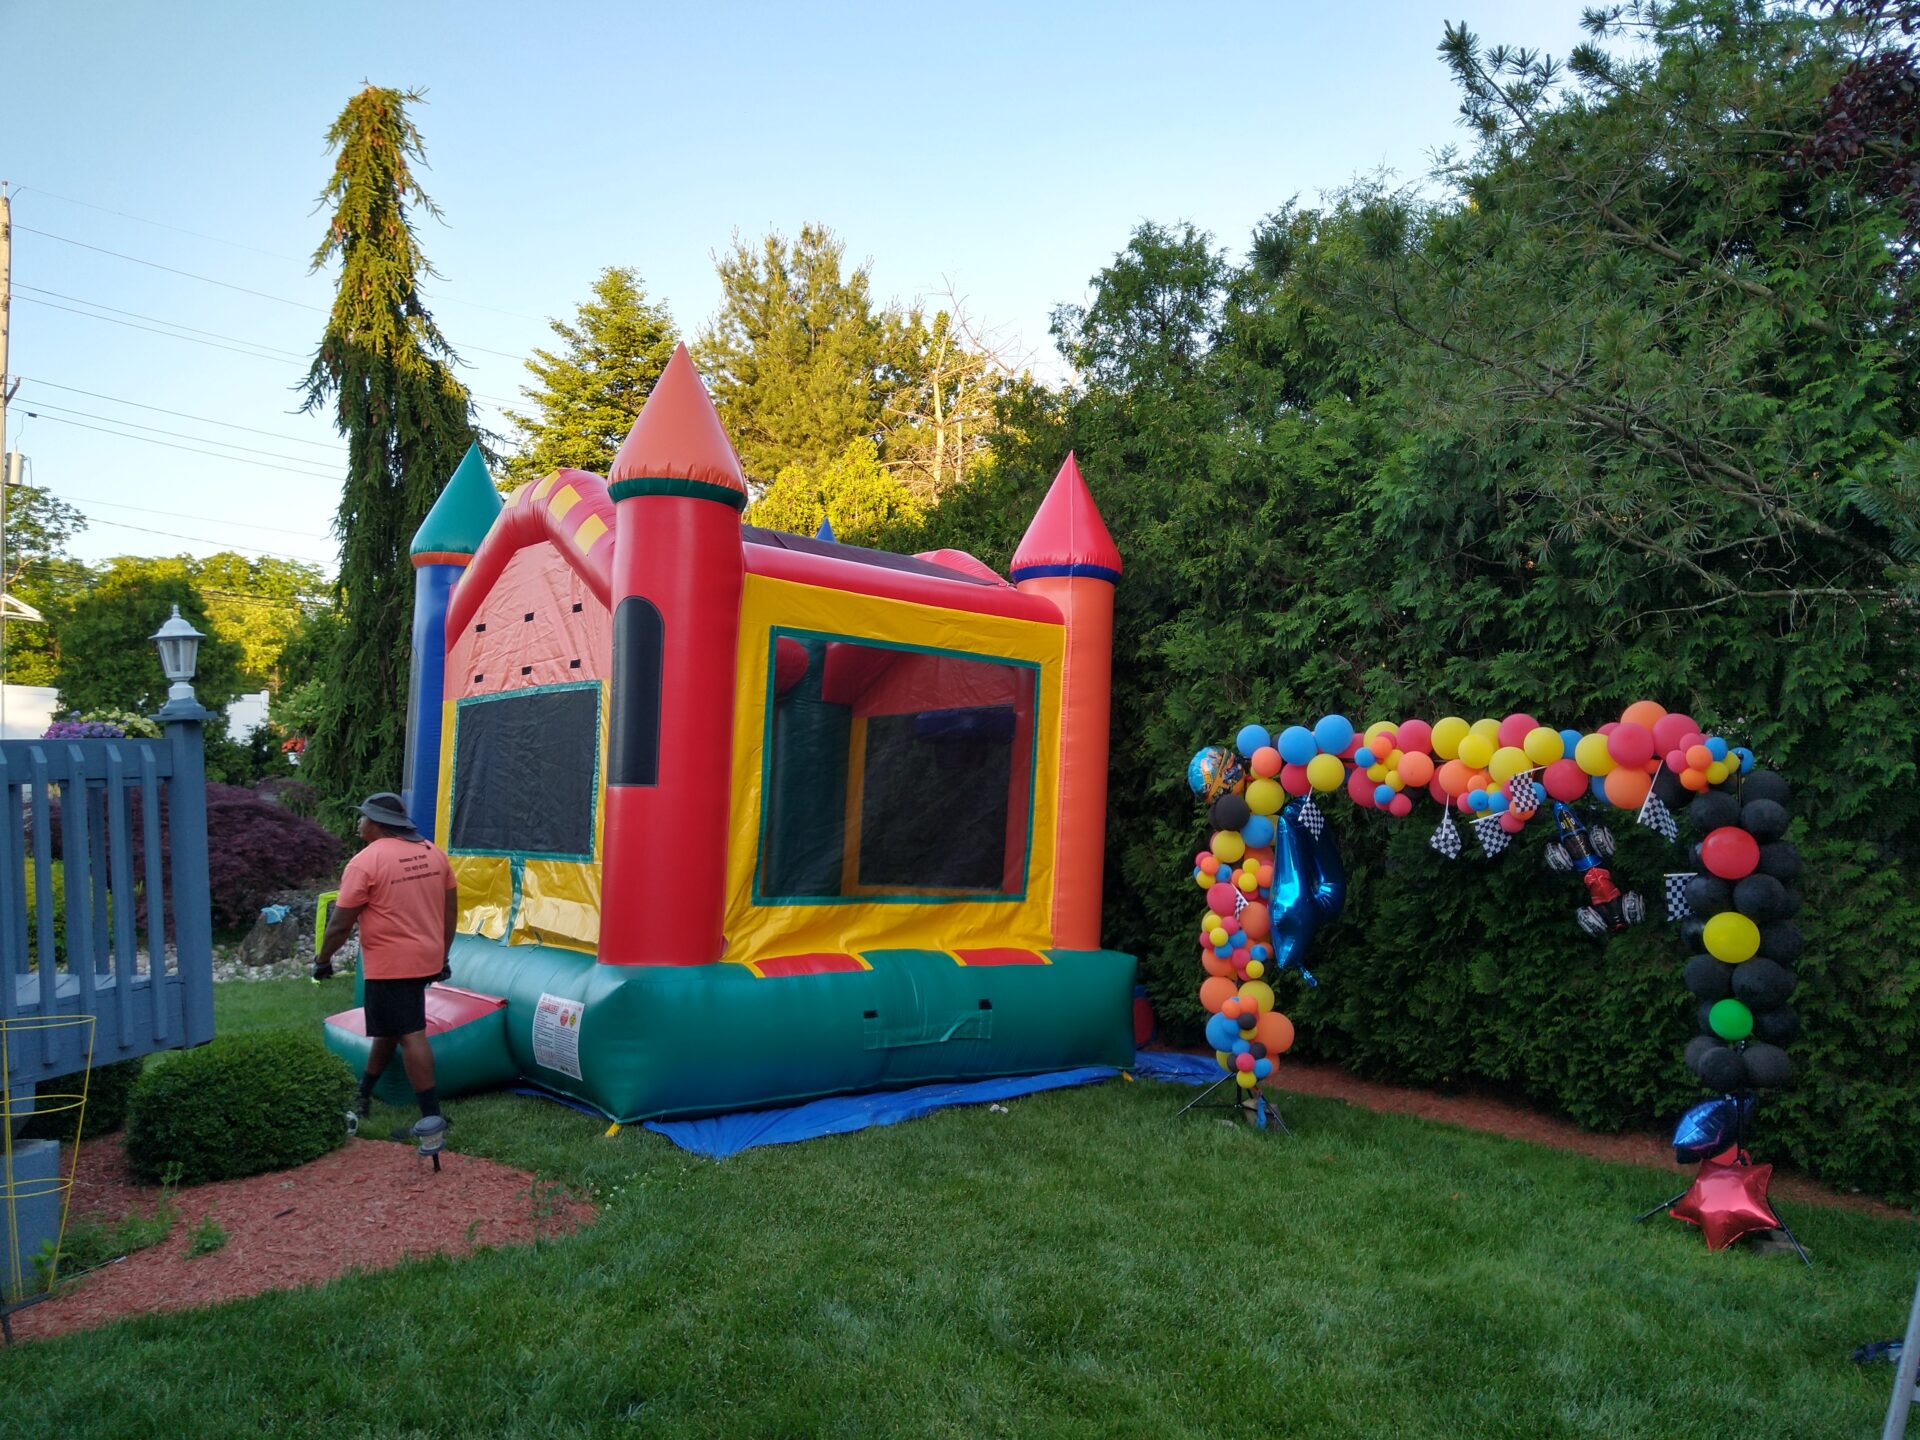 A bouncy castle in a yard.